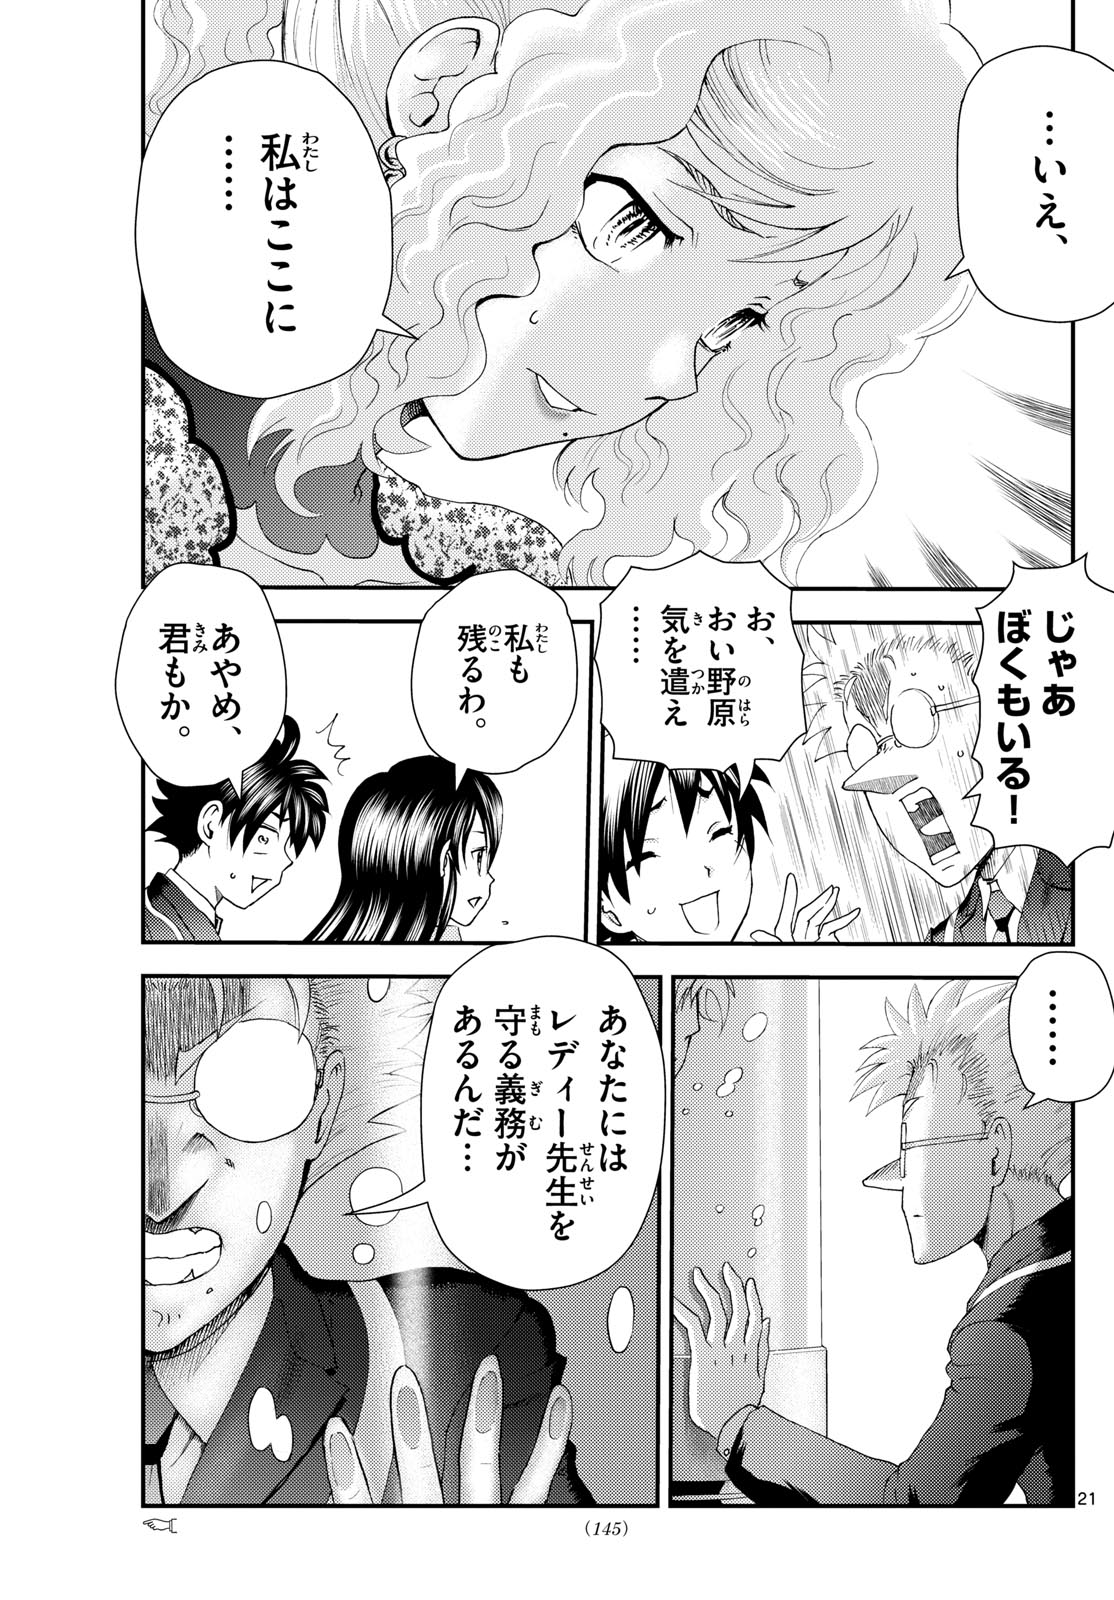 Kimi wa 008 - Chapter 286 - Page 21